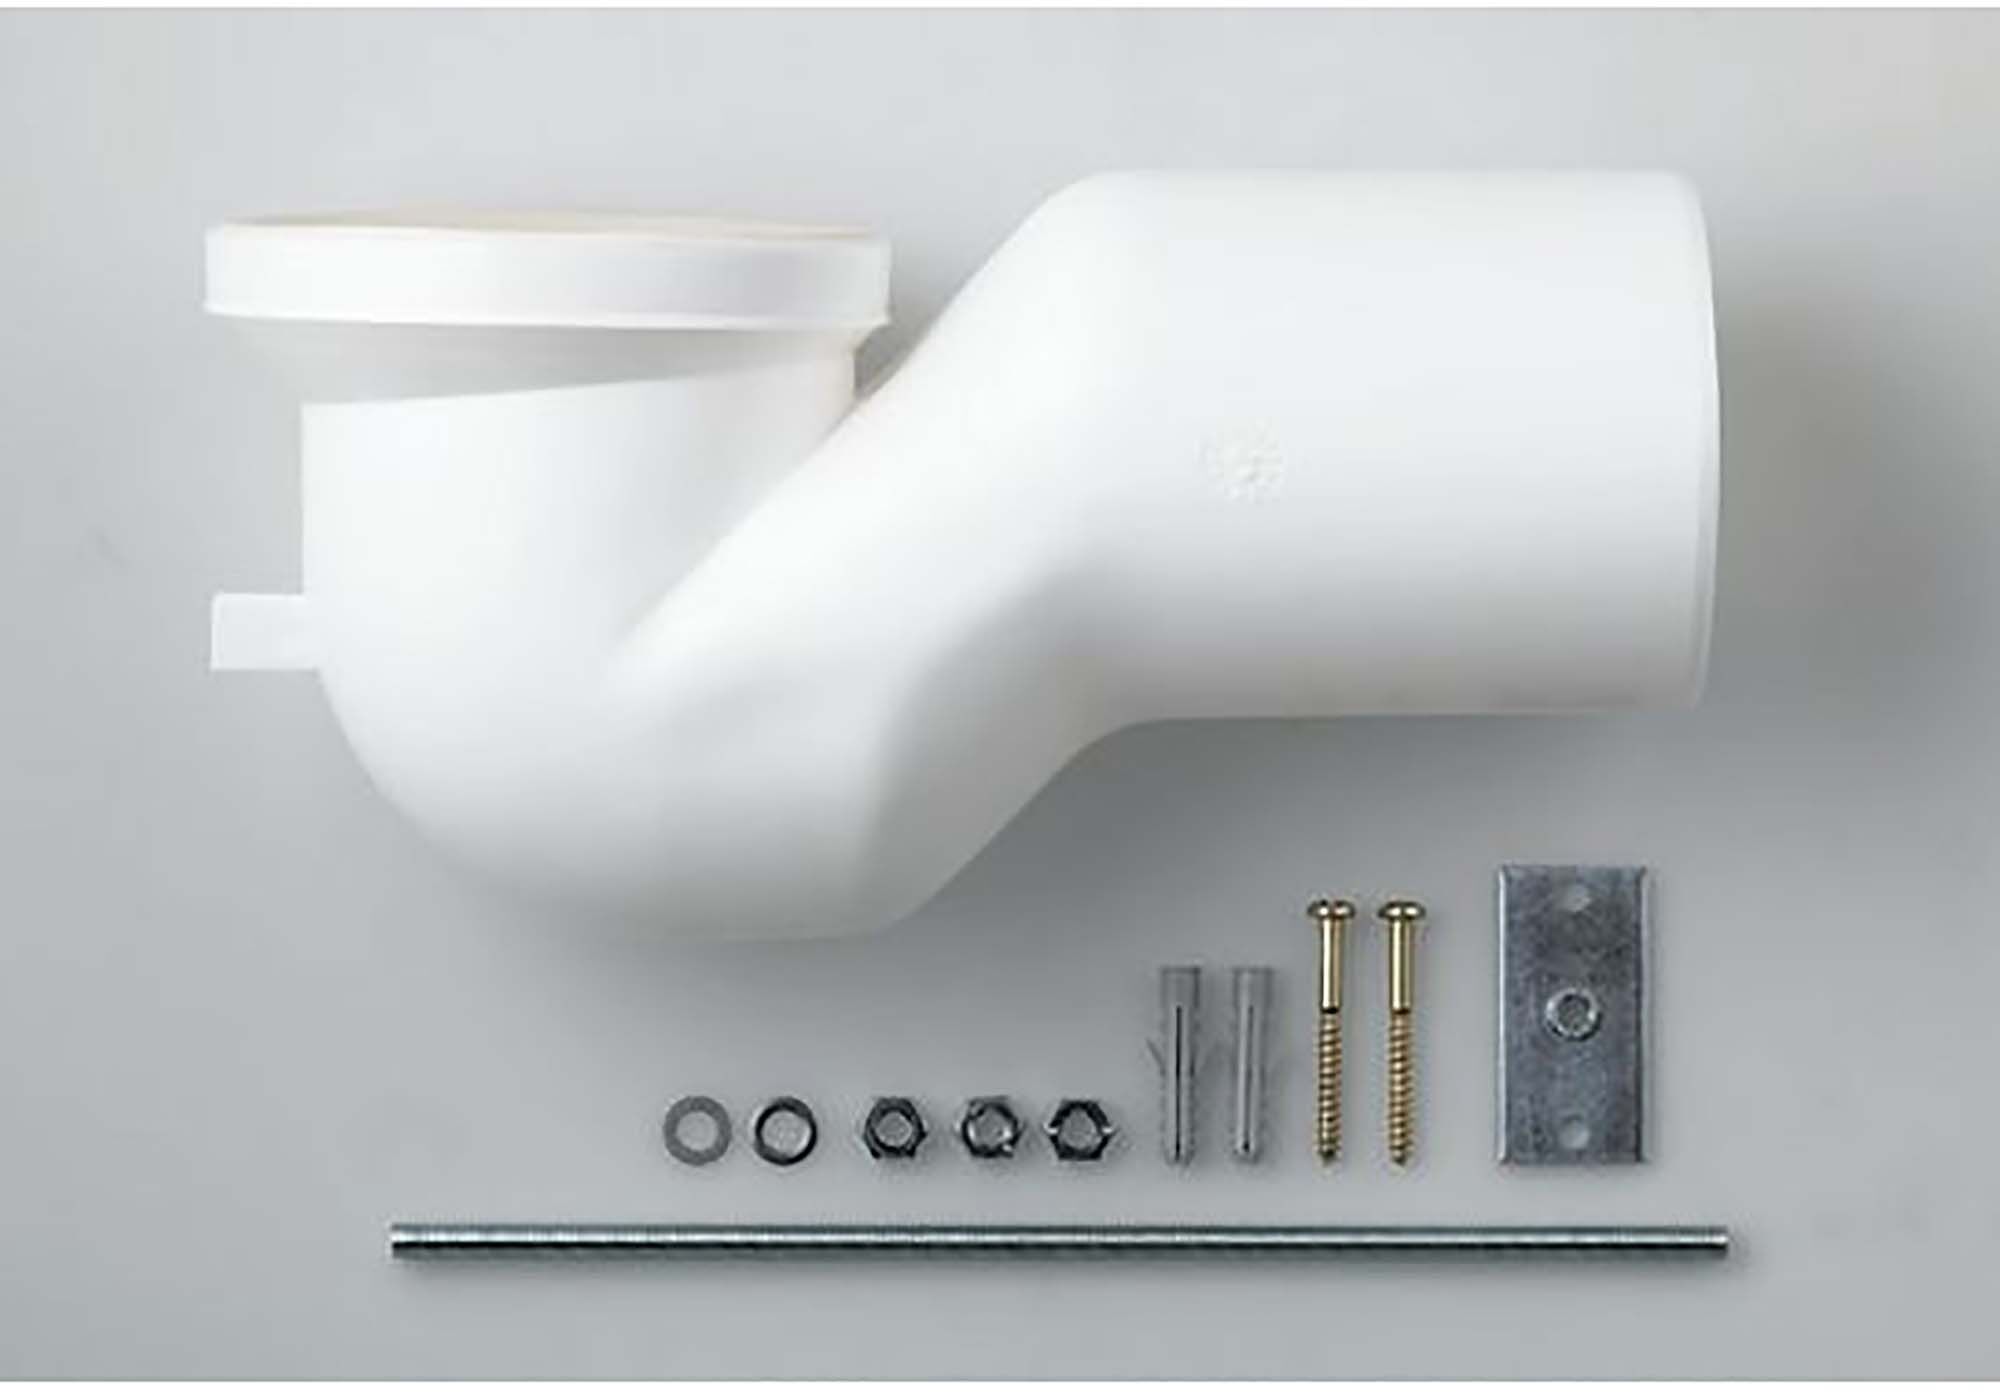 LAUFEN Ablaufset H8990270000001 für Stand-WC mit UP-Spülkasten 105-125 mm, weiß